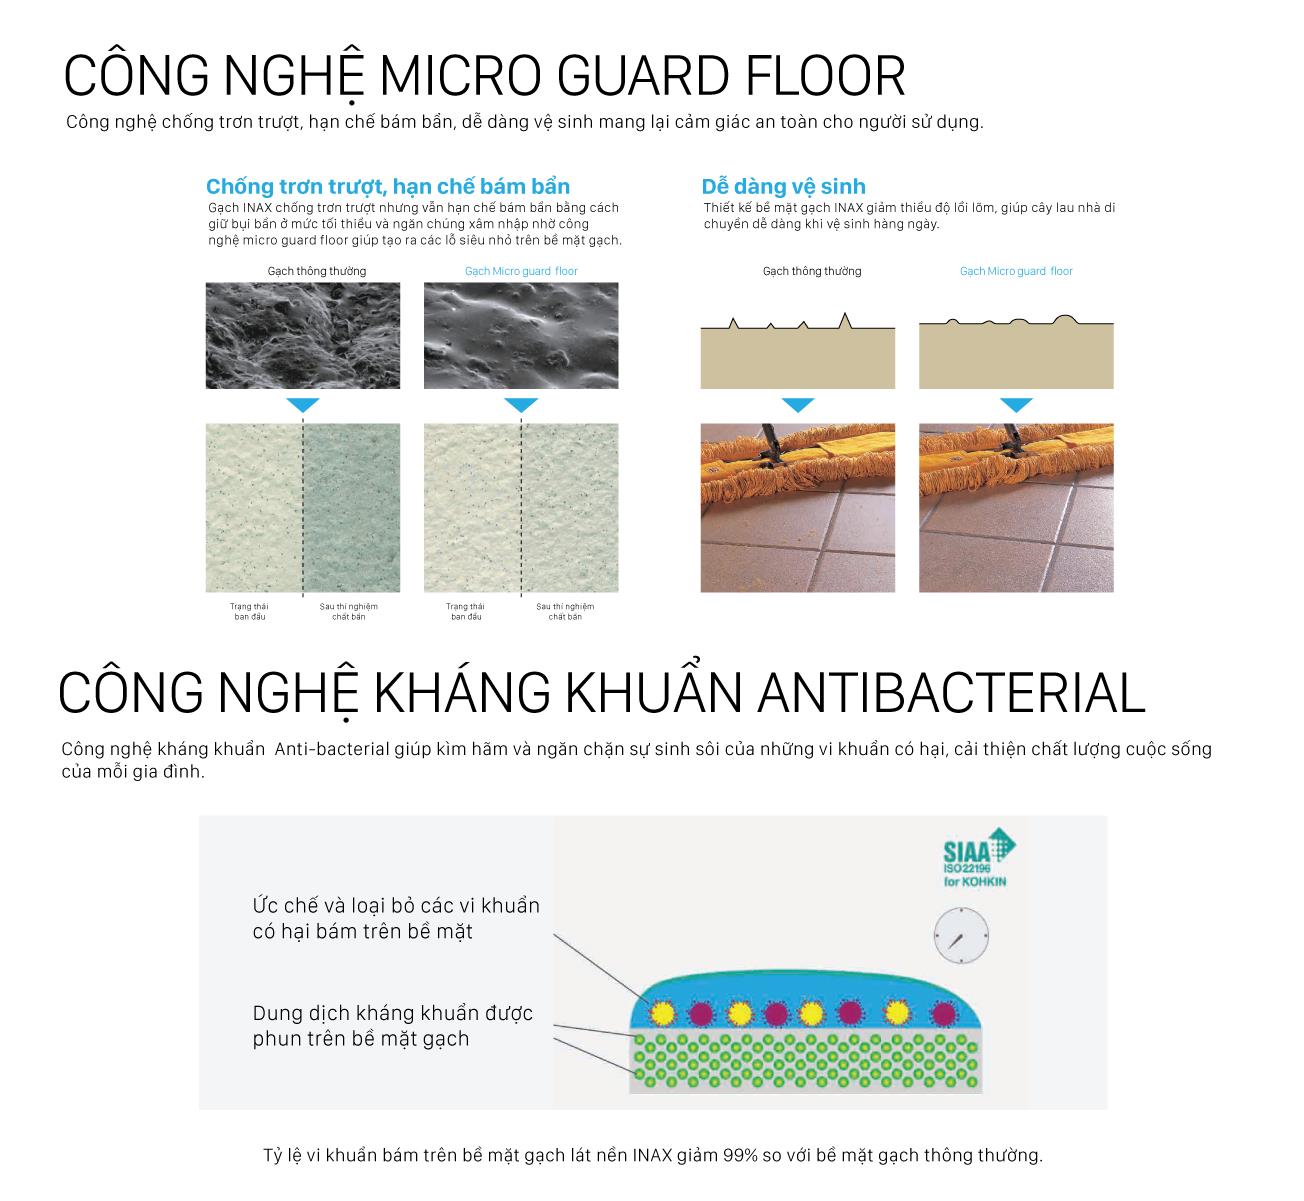 INAX ra mắt gạch lát sàn mới, đưa thiên nhiên vào không gian sống - Ảnh 2.